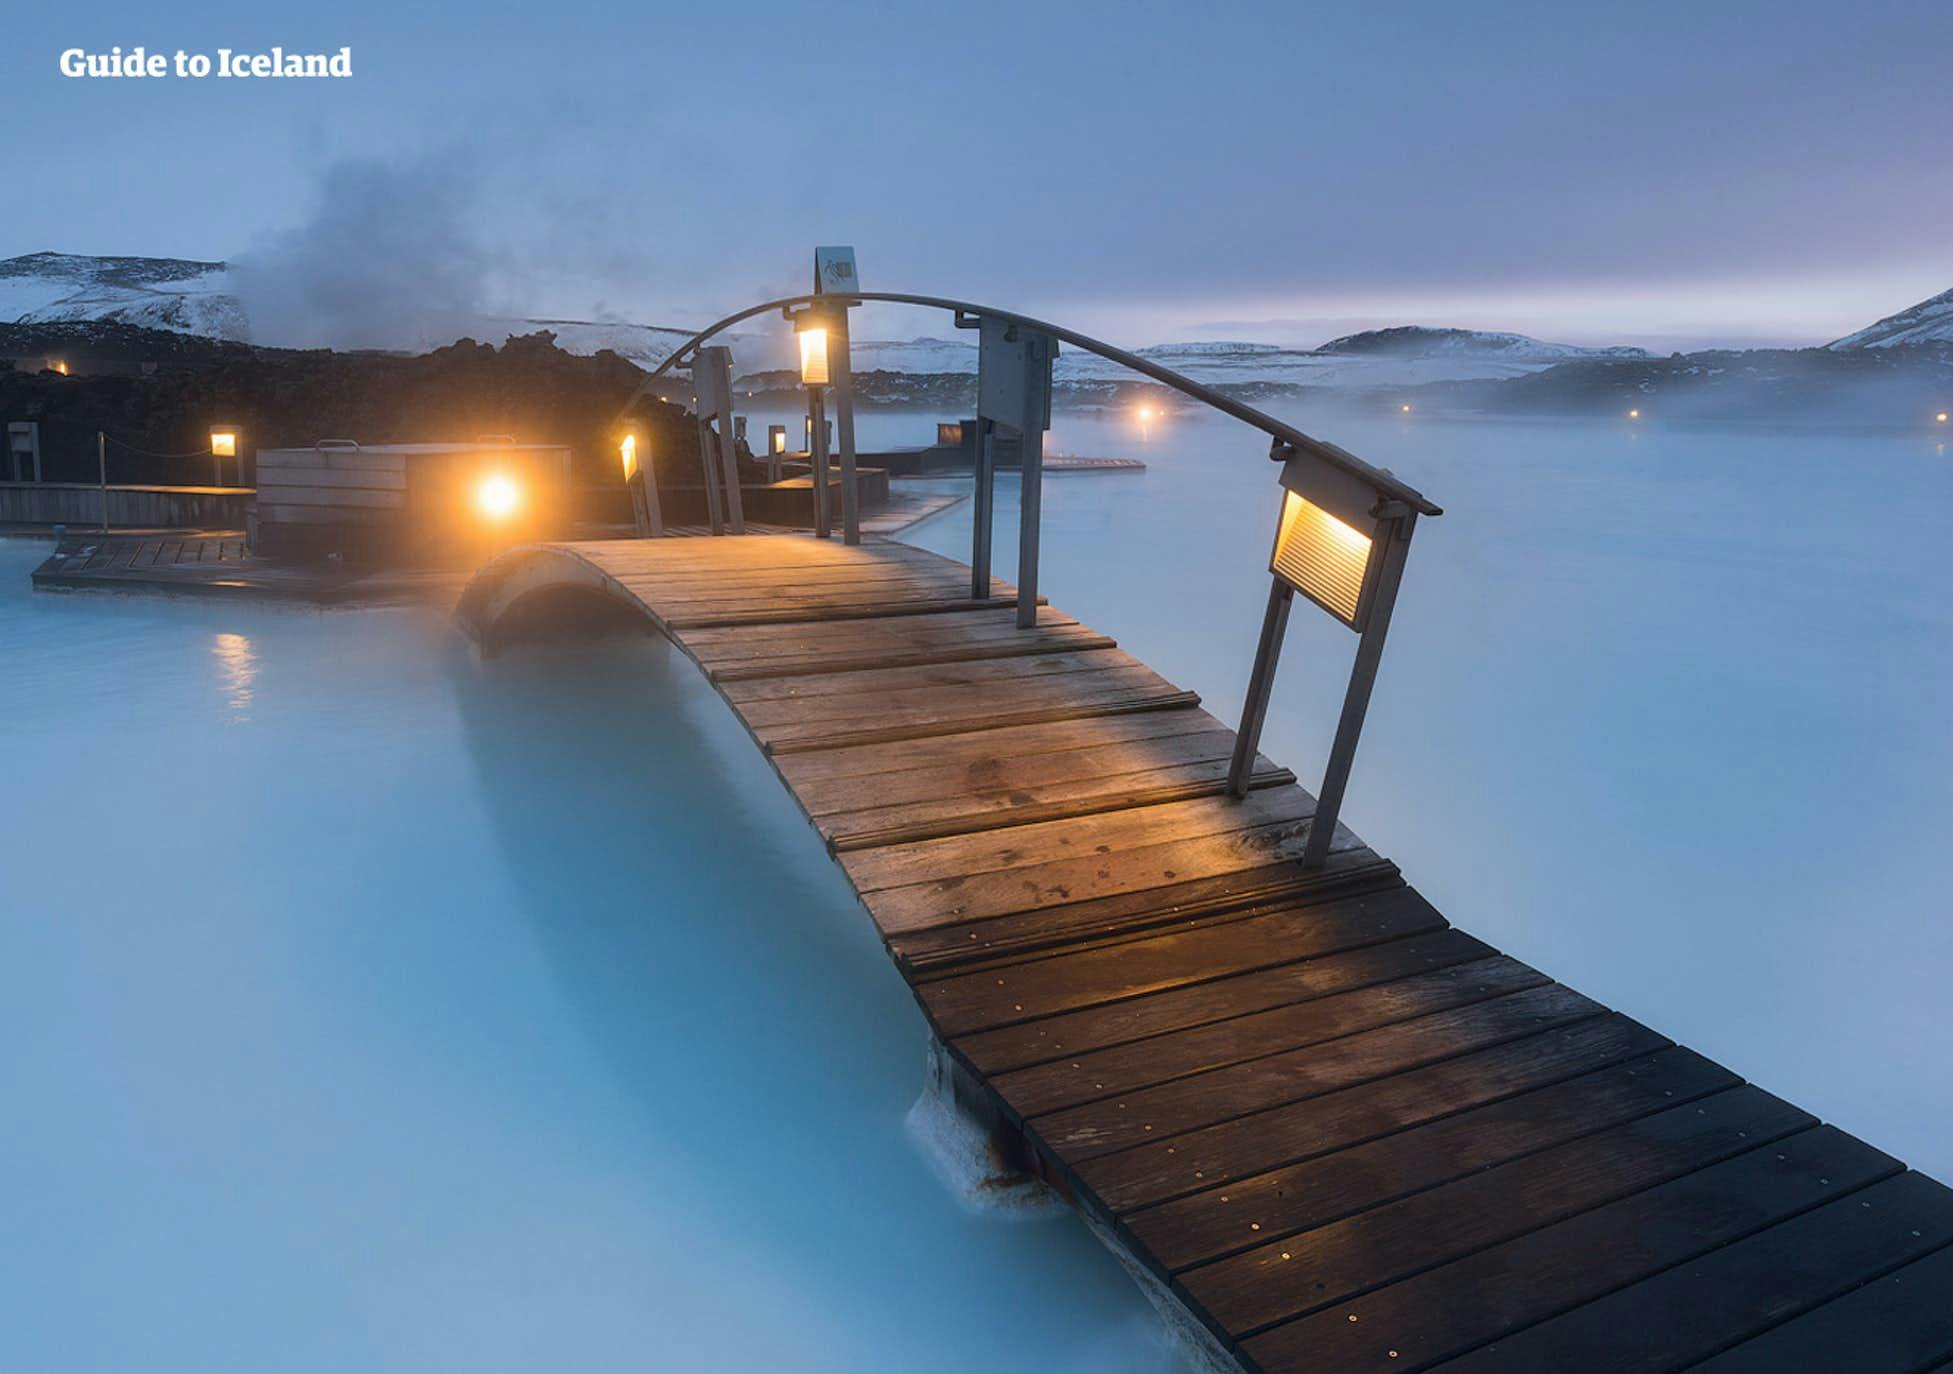 Alojarse en el Retreat Hotel de Blue Lagoon es una de las experiencias más lujosas que uno puede tener en Islandia.